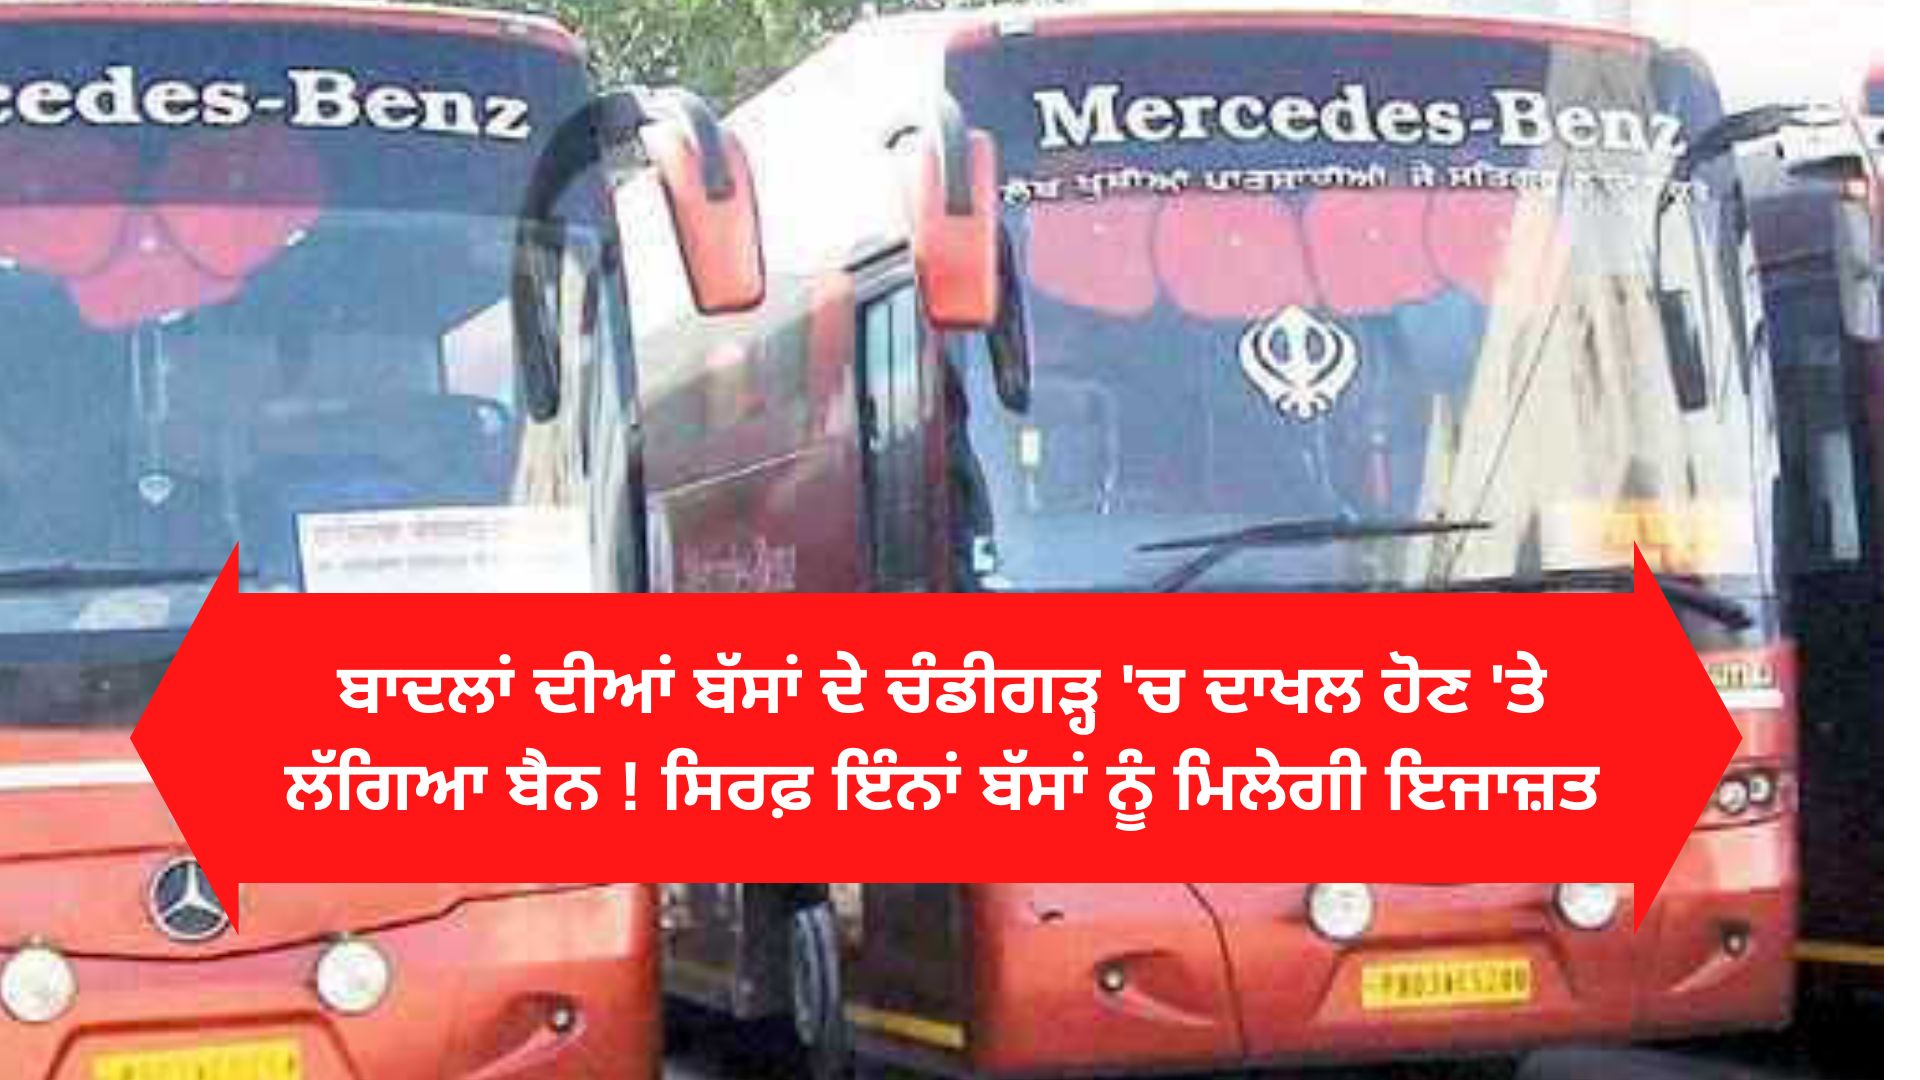 Mann Govt puts brakes on Badal buses